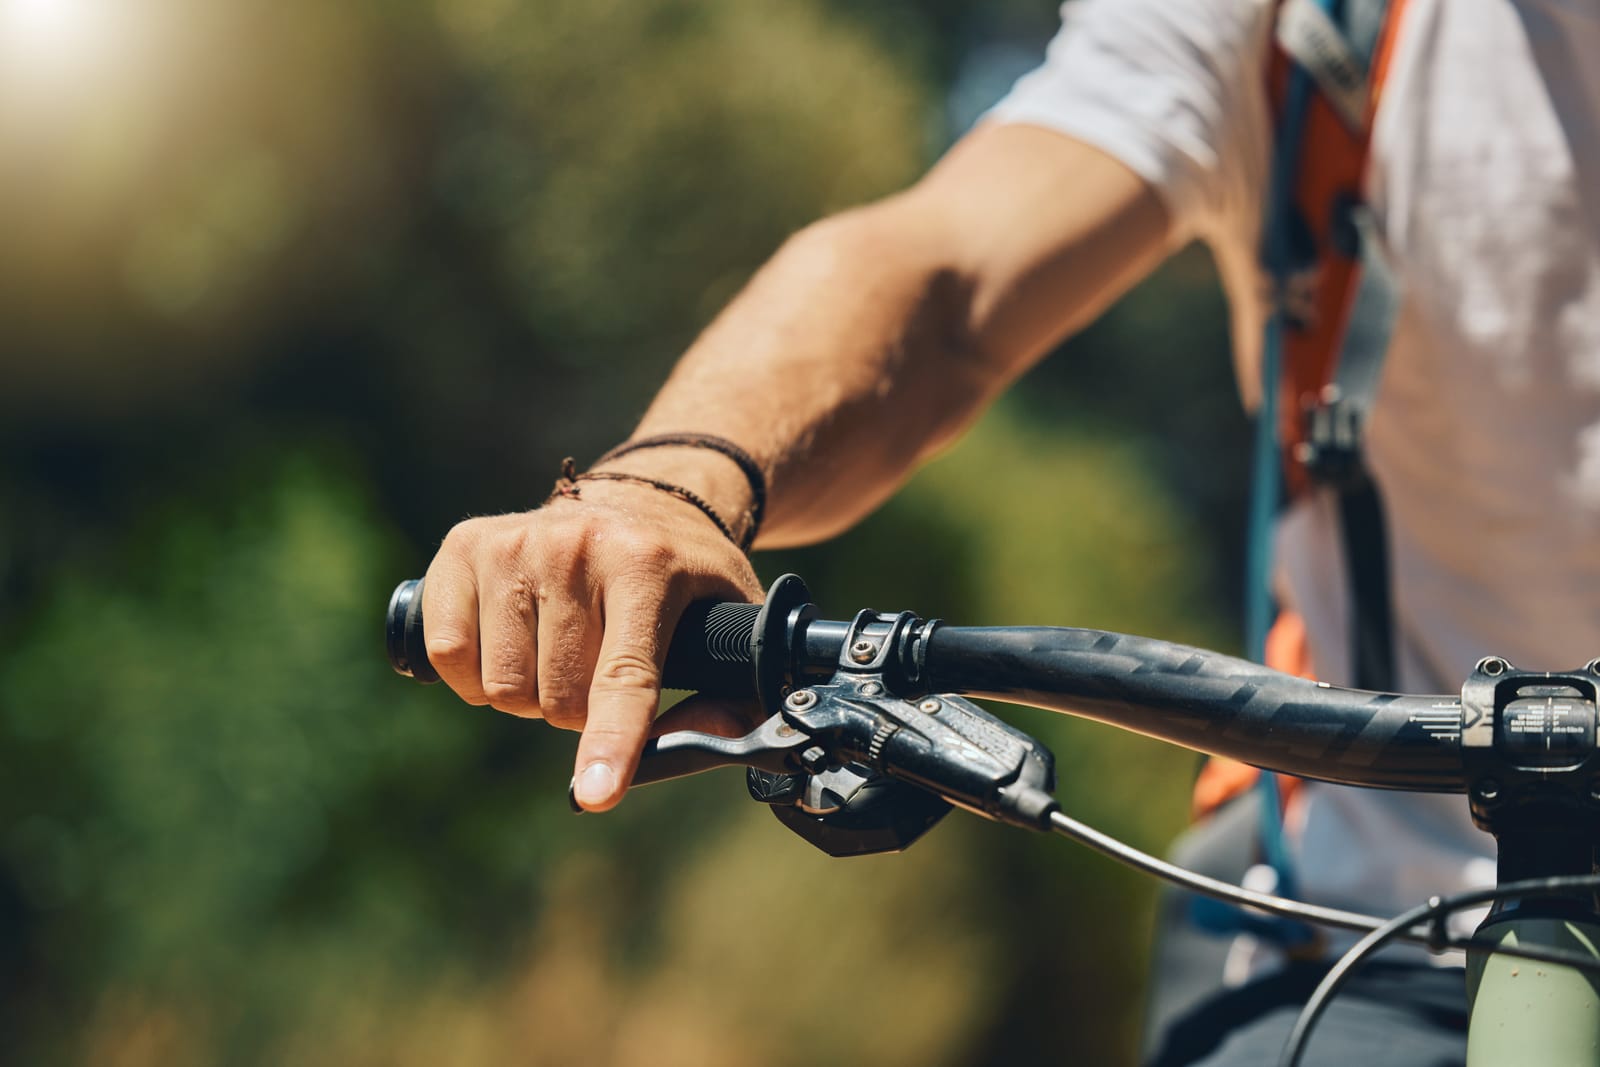 Drętwienie rąk na rowerze - przyczyny i zapobieganie